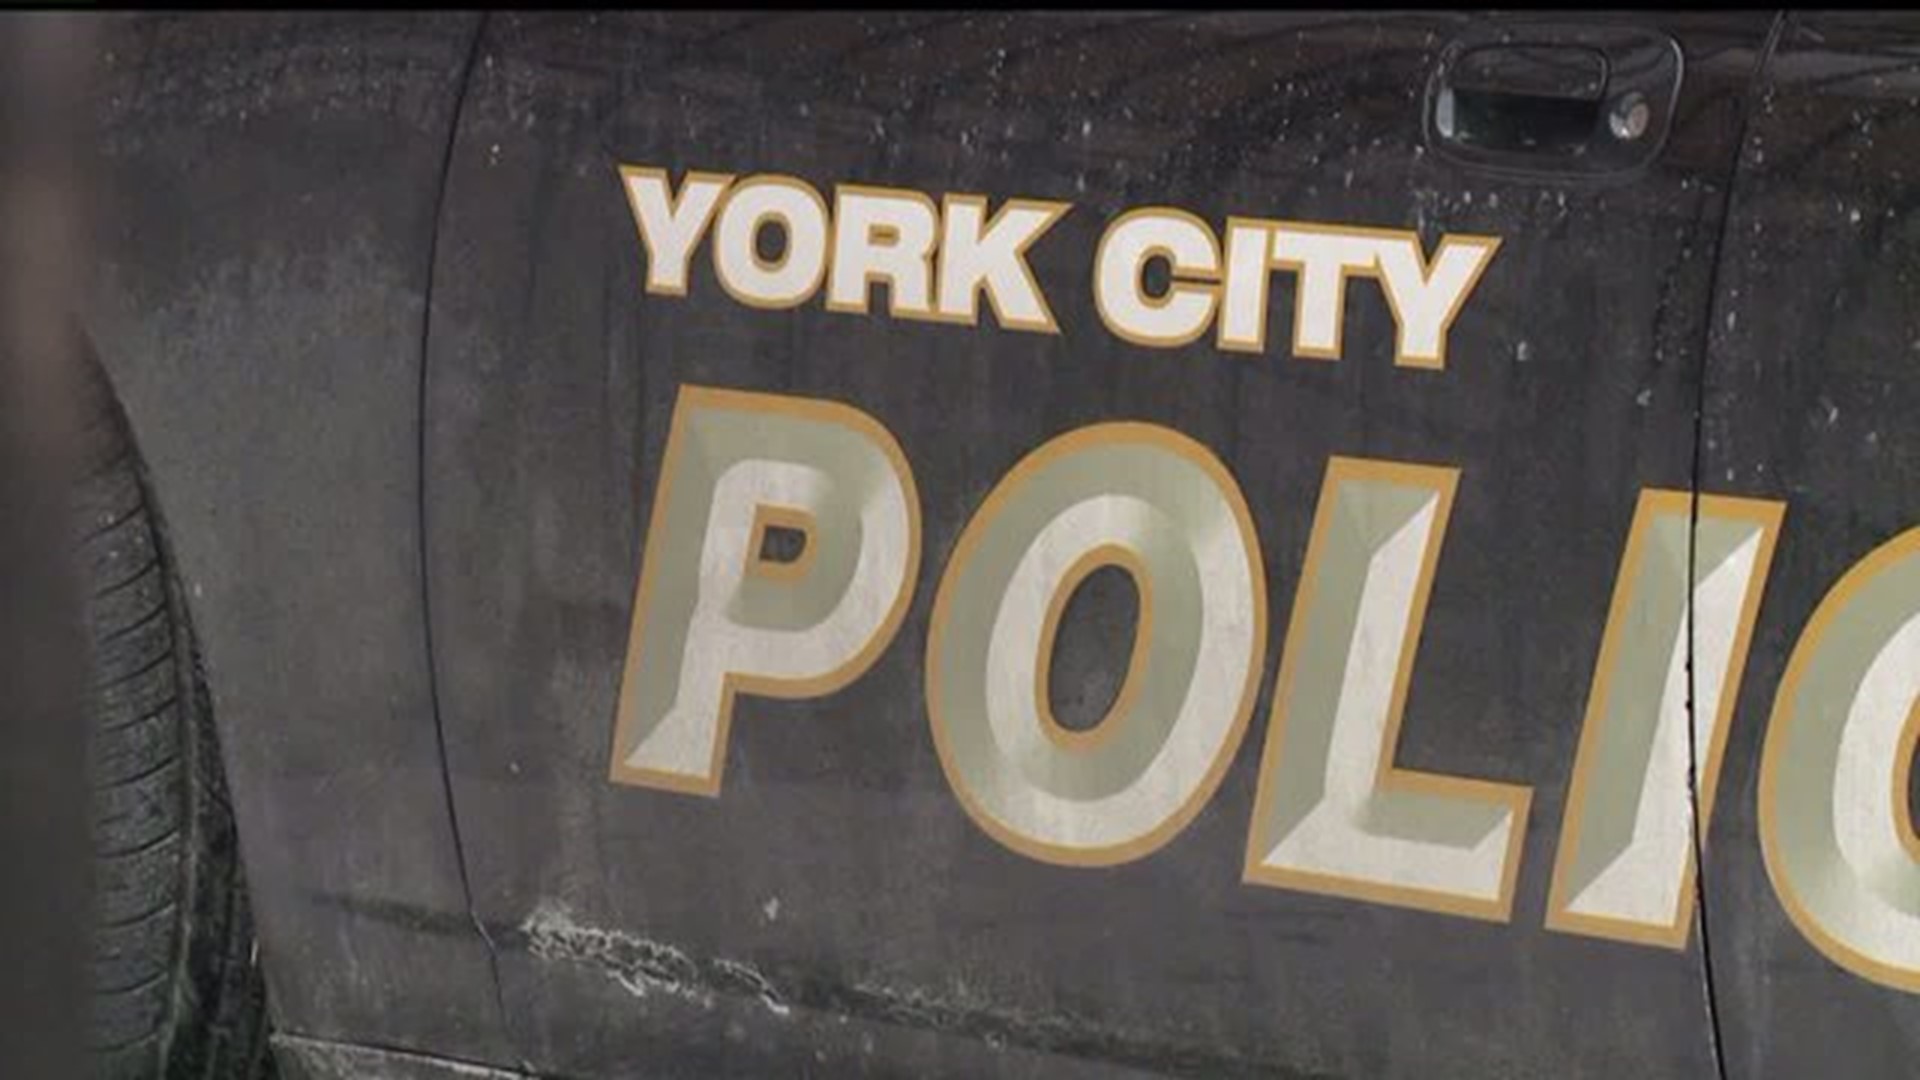 York City Police Officer under investigation for Facebook post